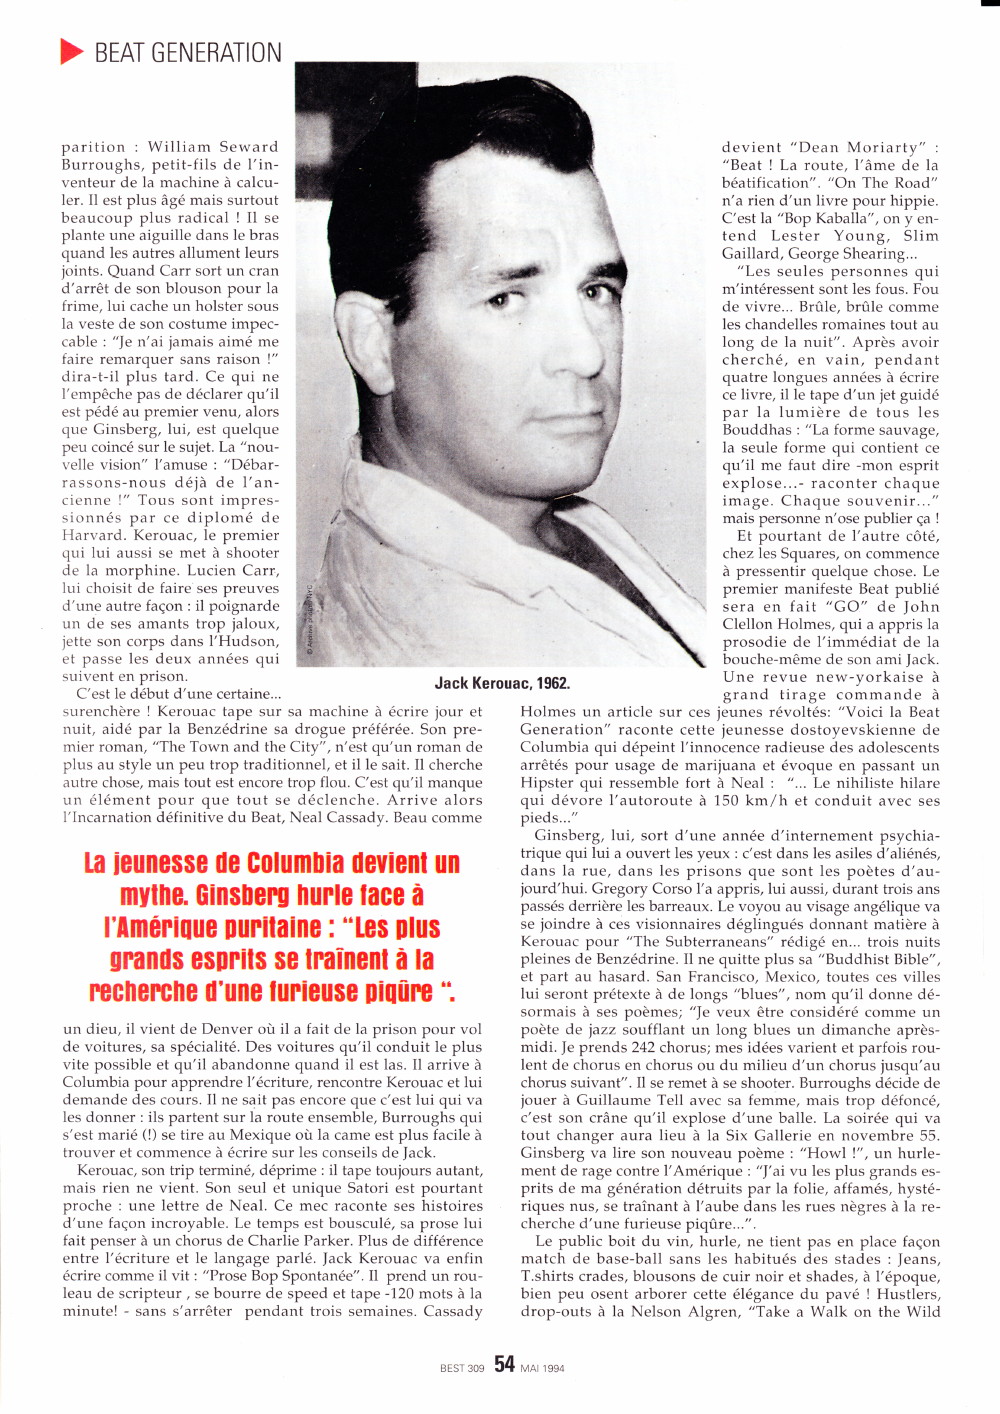 "LA RAGE AU VENTRE DES GARÇONS SAUVAGES" par DANIEL DARC ("BEST", mai 1994) 13071311435515789311379144